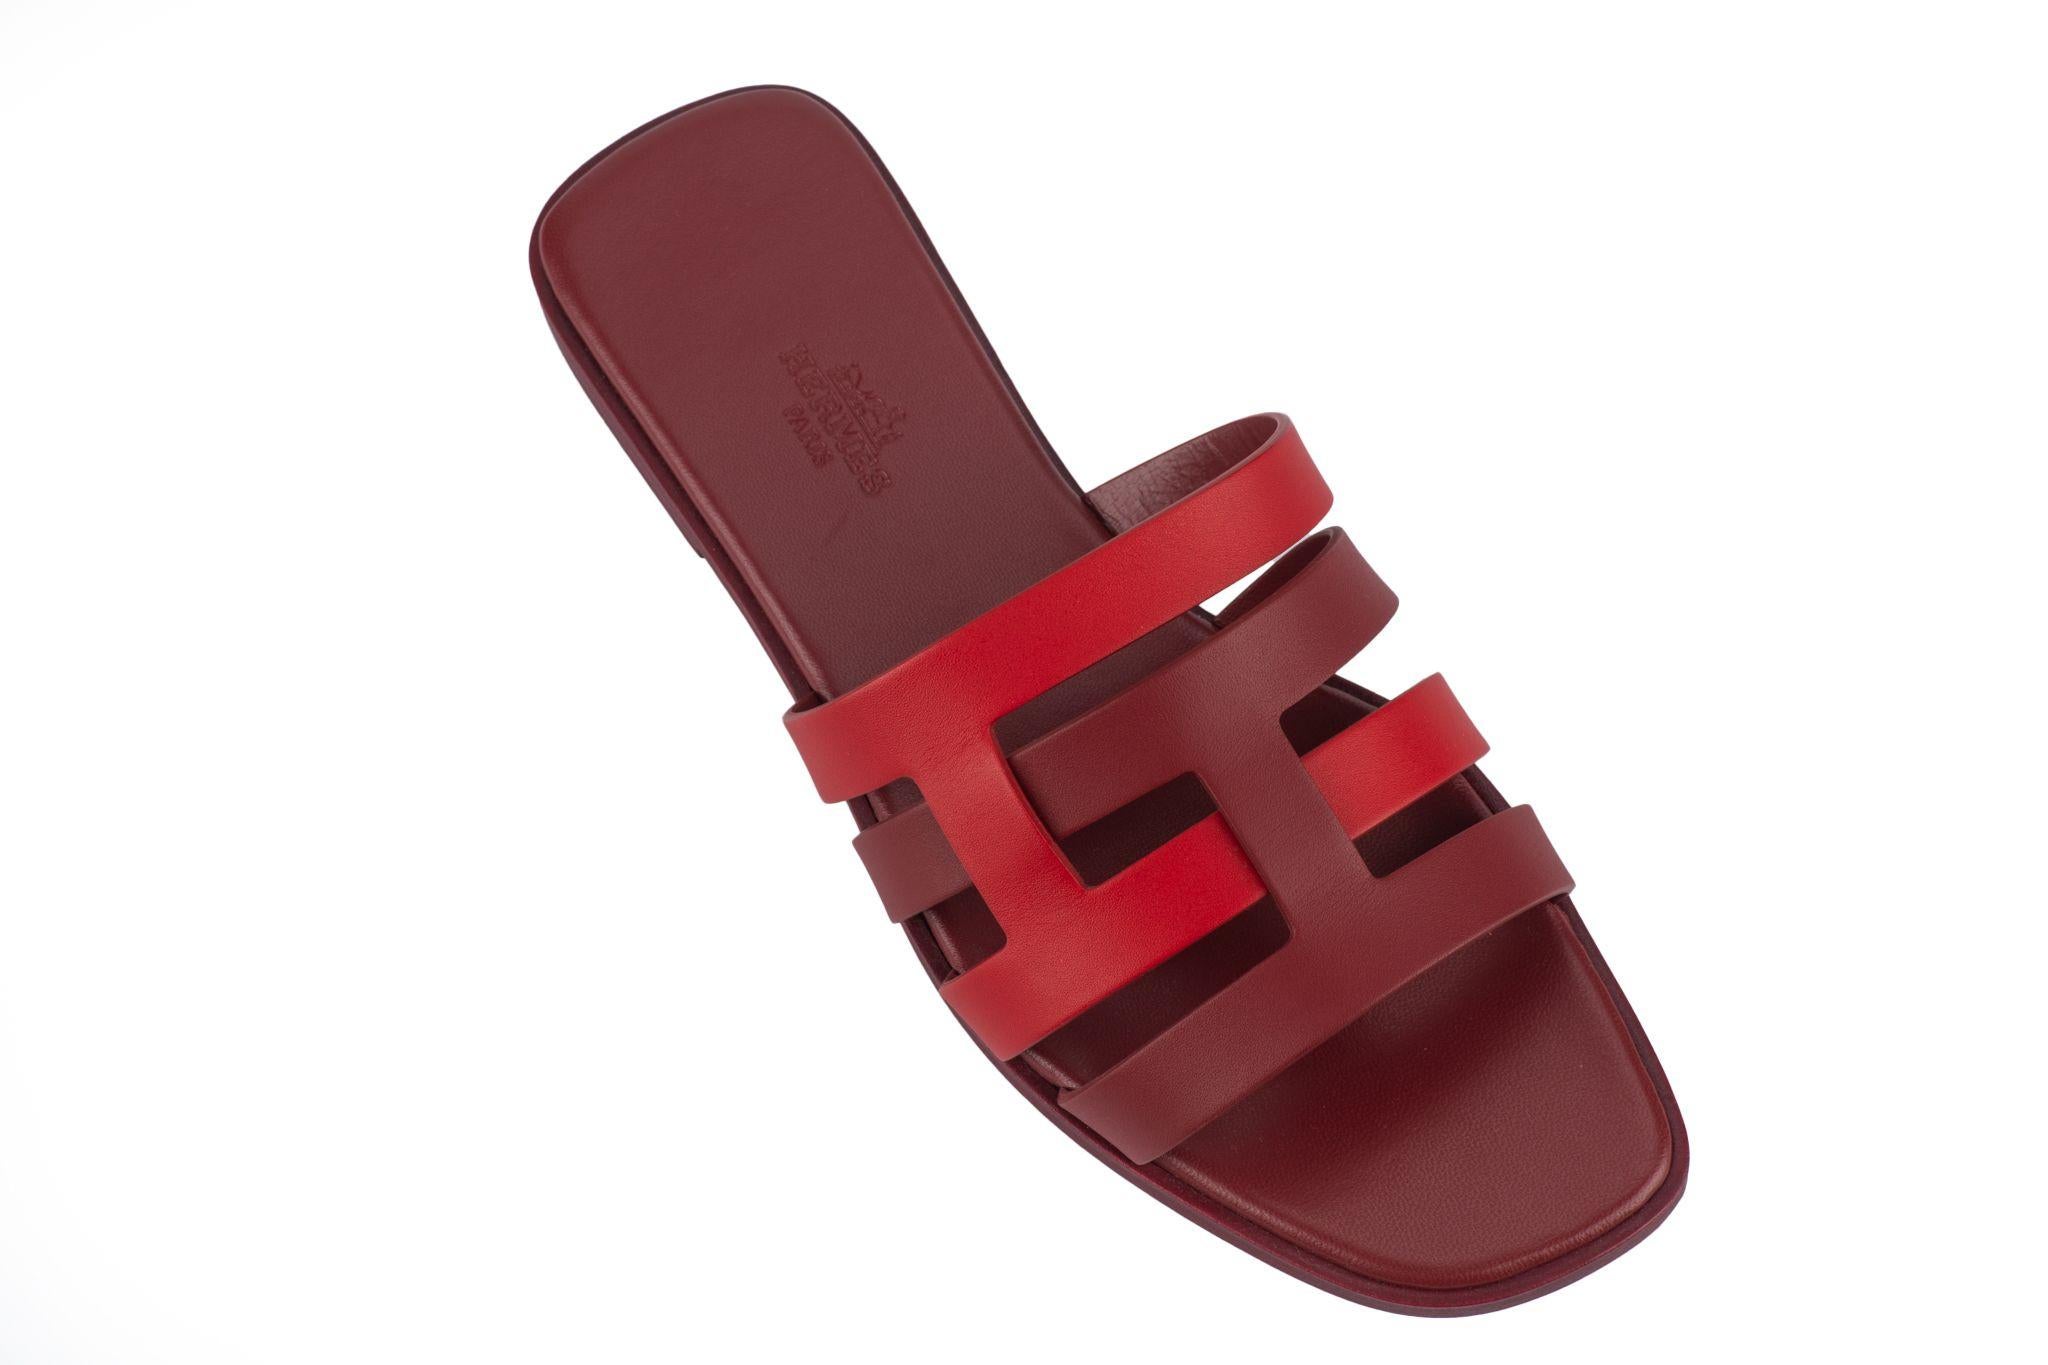 Diapositives Hermès Amore en cuir de veau combinant le rouge grenat et l'orange solaire. Ces sandales classiques sont ornées de deux initiales entrelacées et de bords droits. Taille italienne 38, US 7.
Neuf avec double jaquette et boîte d'origine.